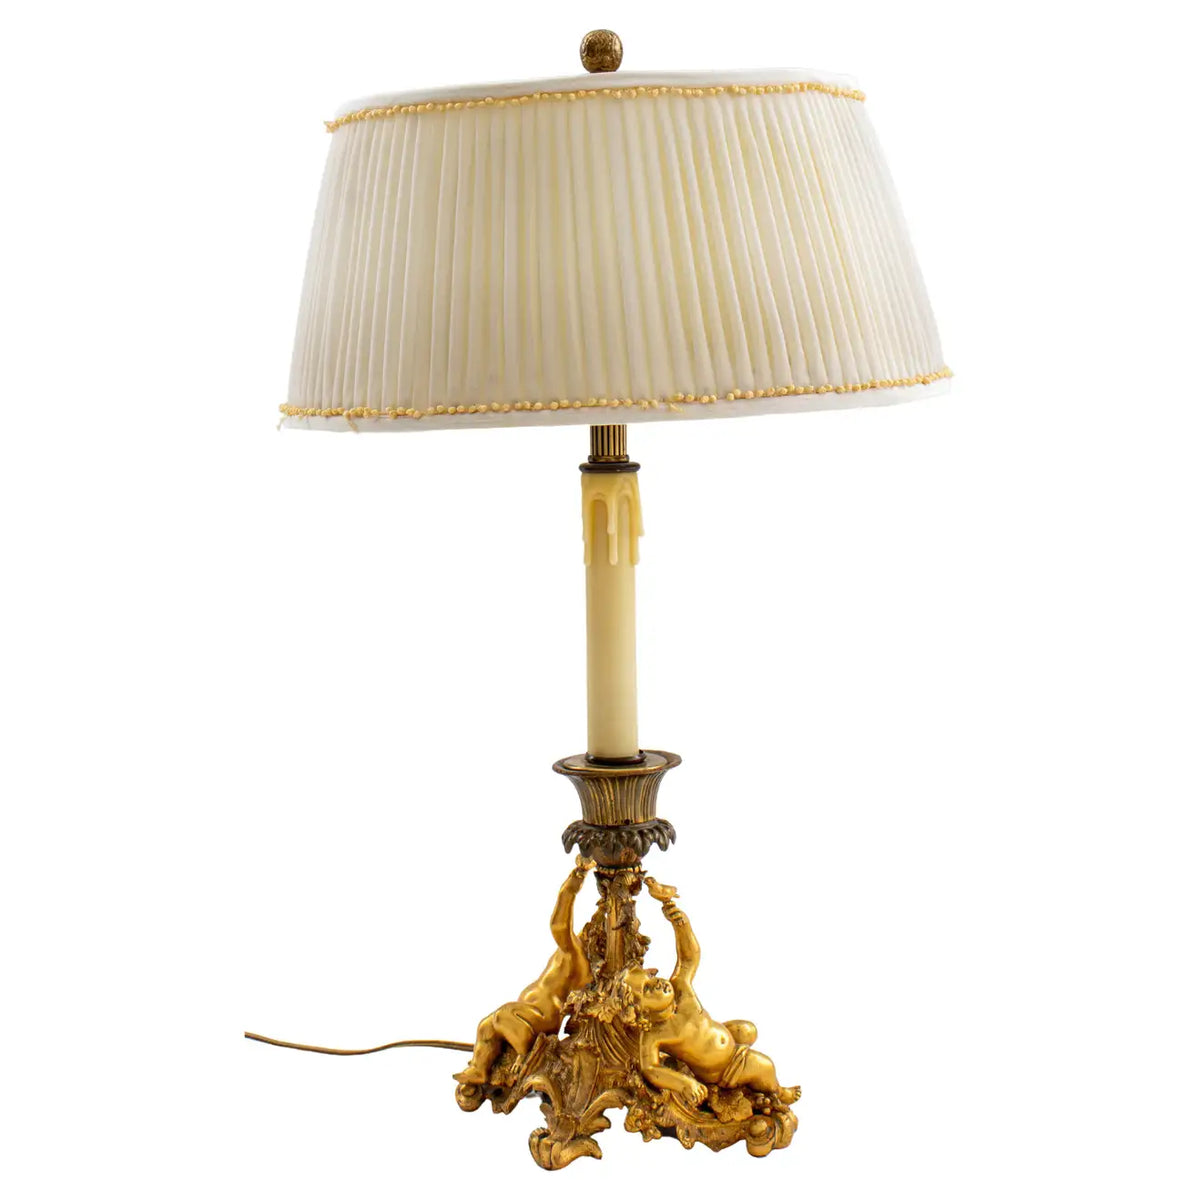 ロココの灯りをお部屋にいかが/ Antique Louis XV Style Brass Table Lamp with Shade -